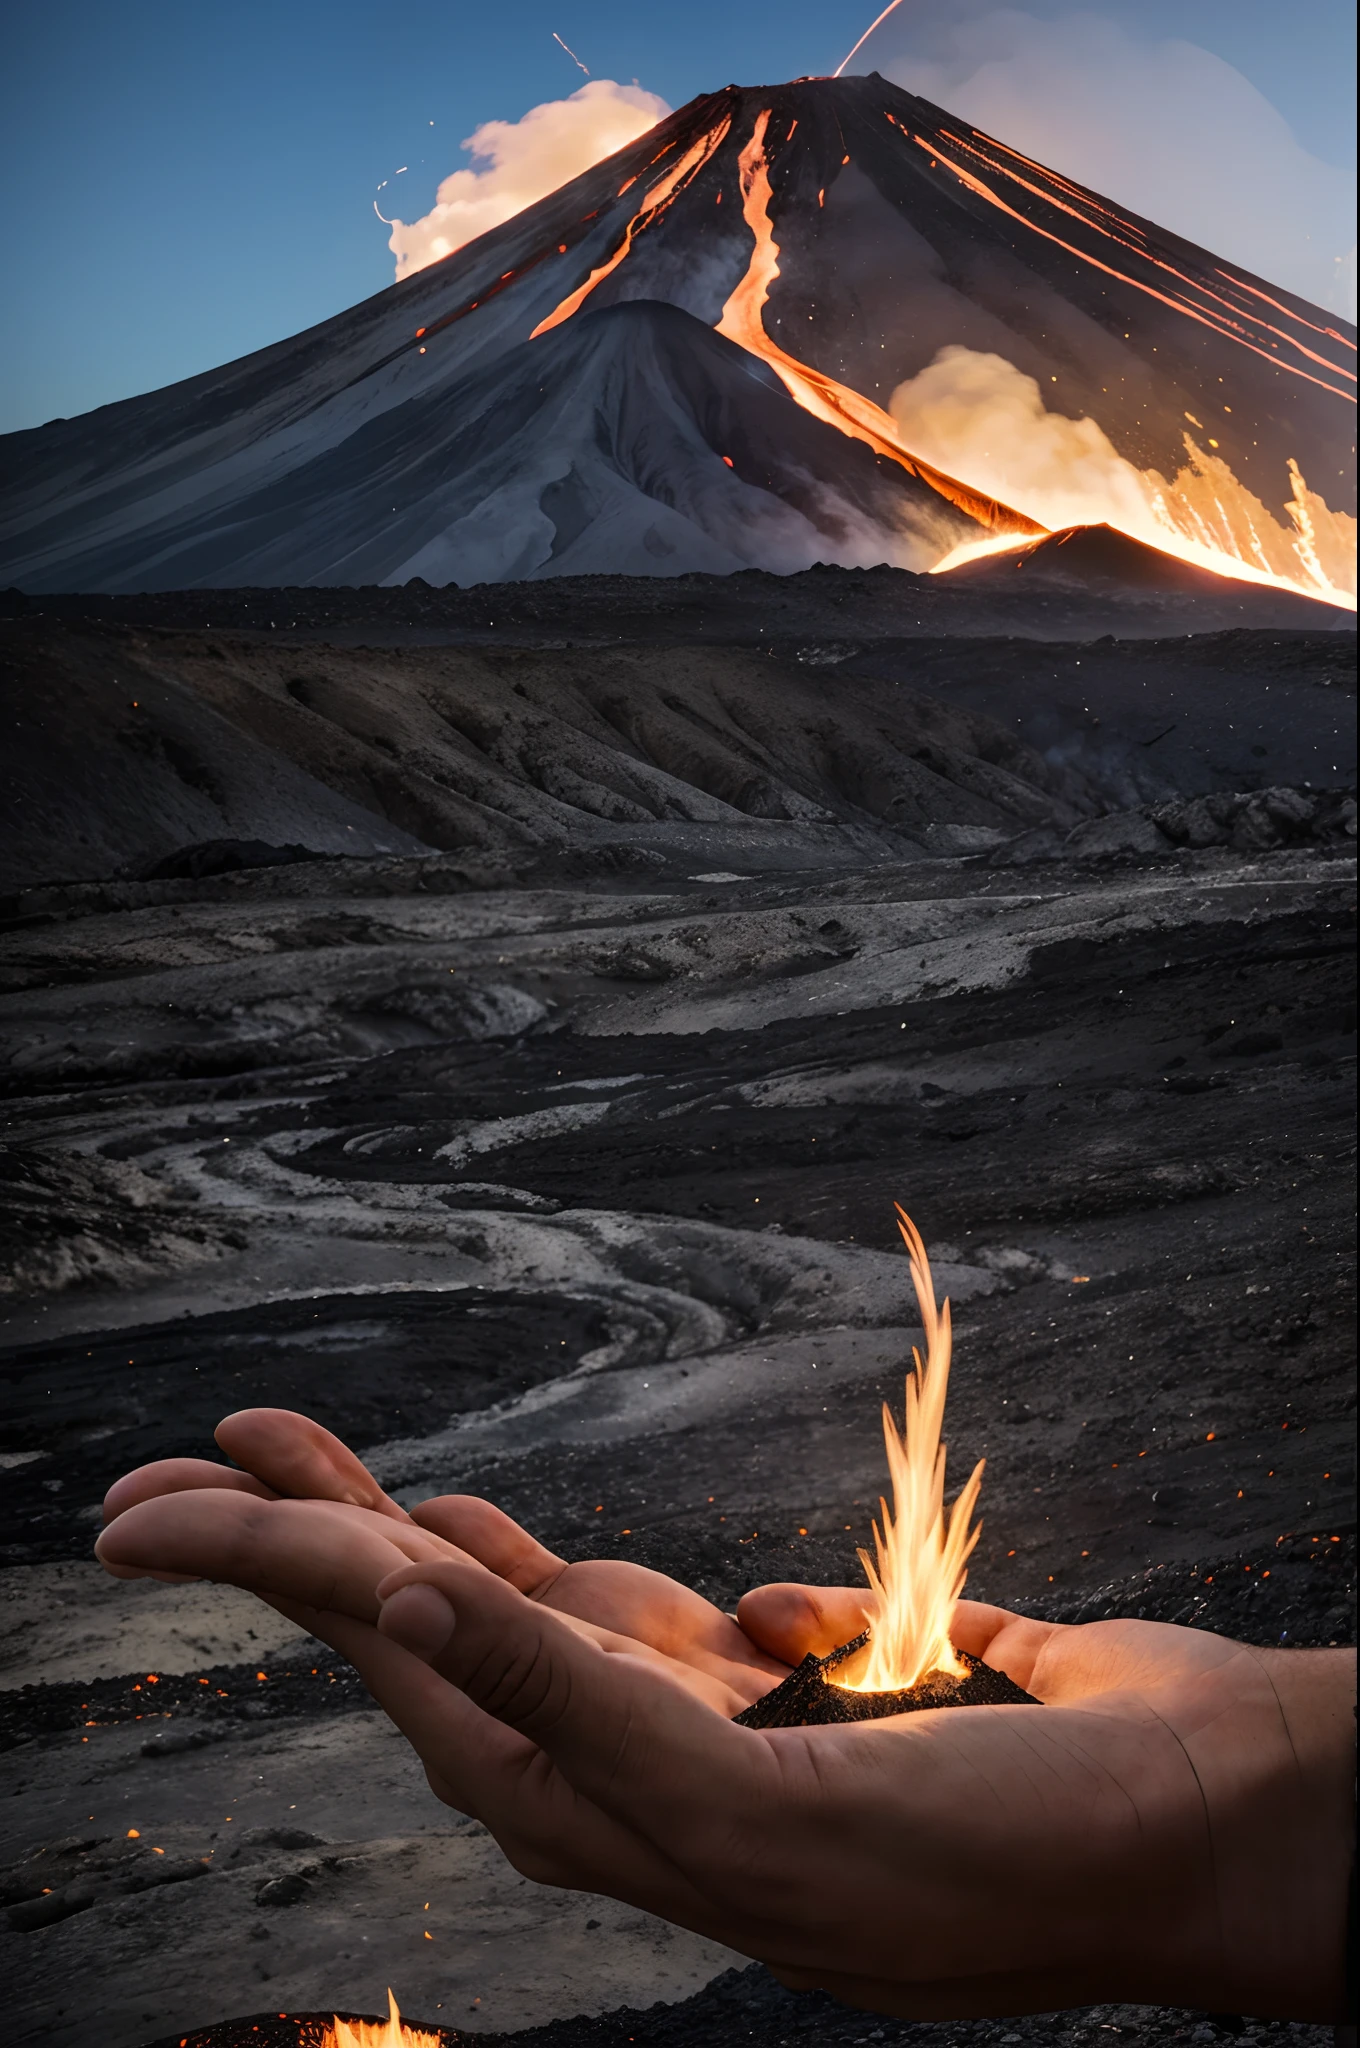 一名男子手握一座火山. 火山喷发火山砾和烟雾. 熔岩从火山斜坡上流下, 在手上掉下来